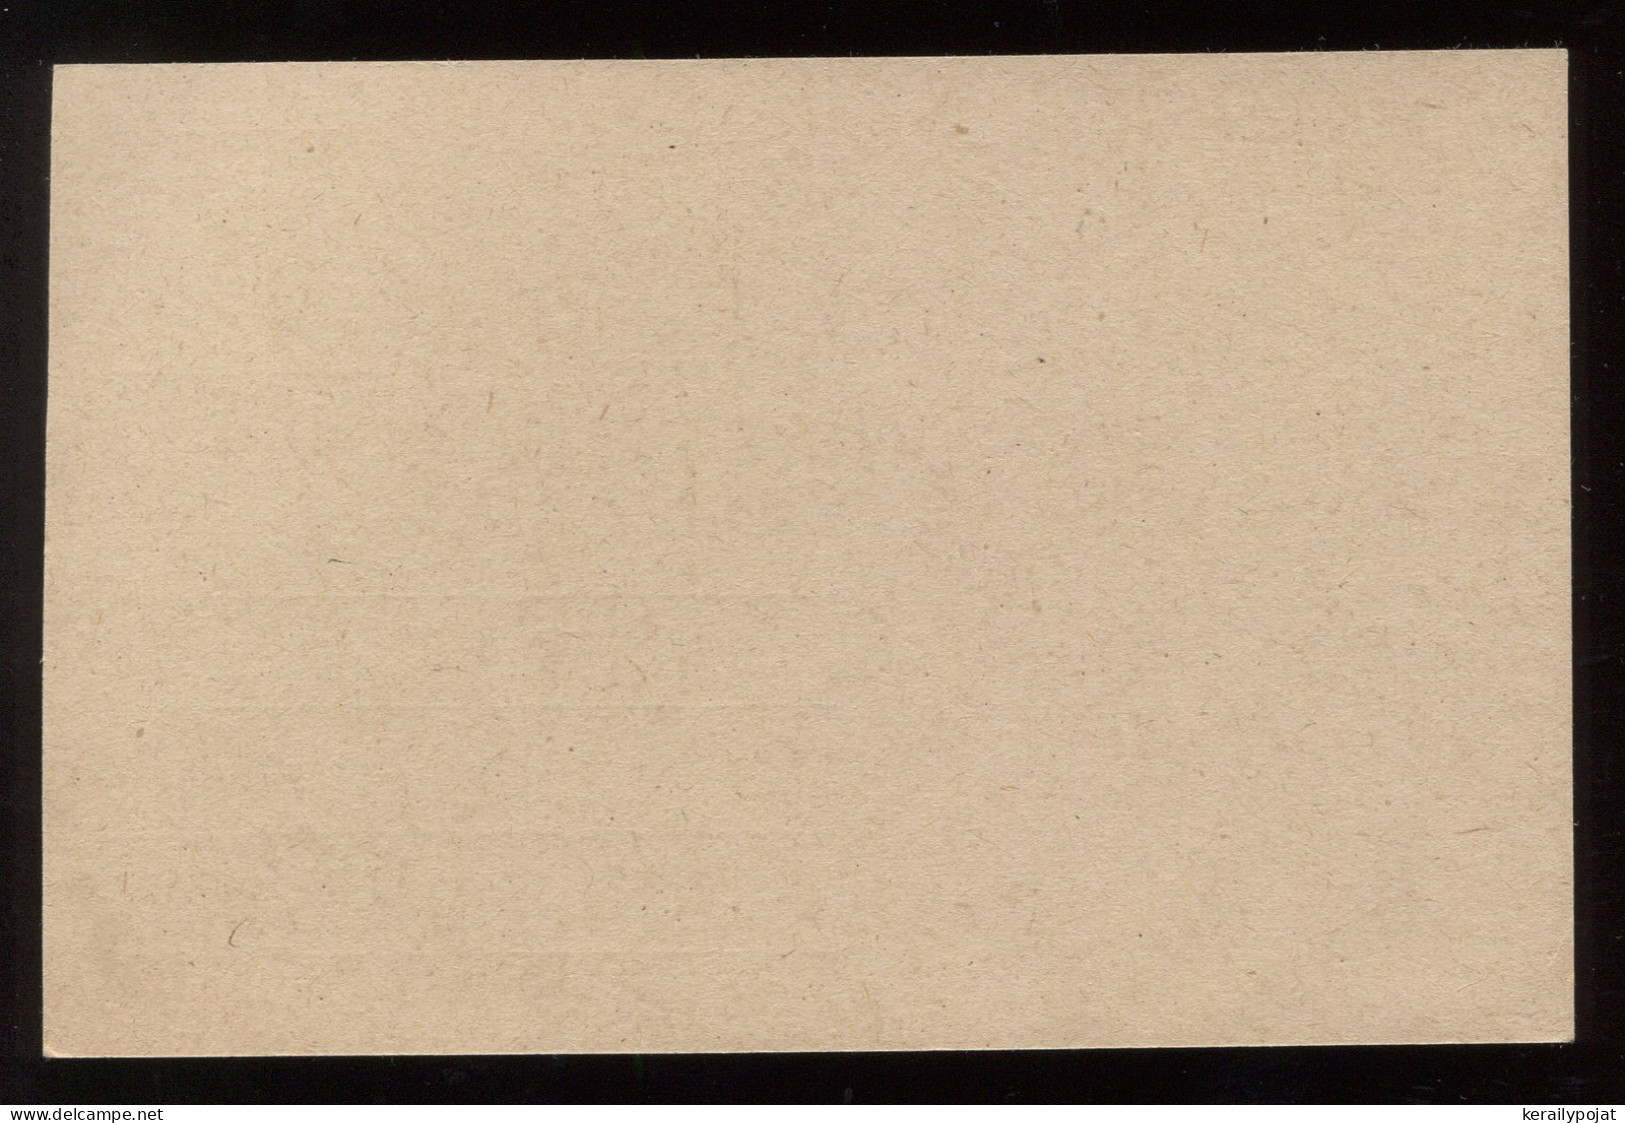 Saargebiet 1920's 40c Unused Stationery Card__(8286) - Entiers Postaux